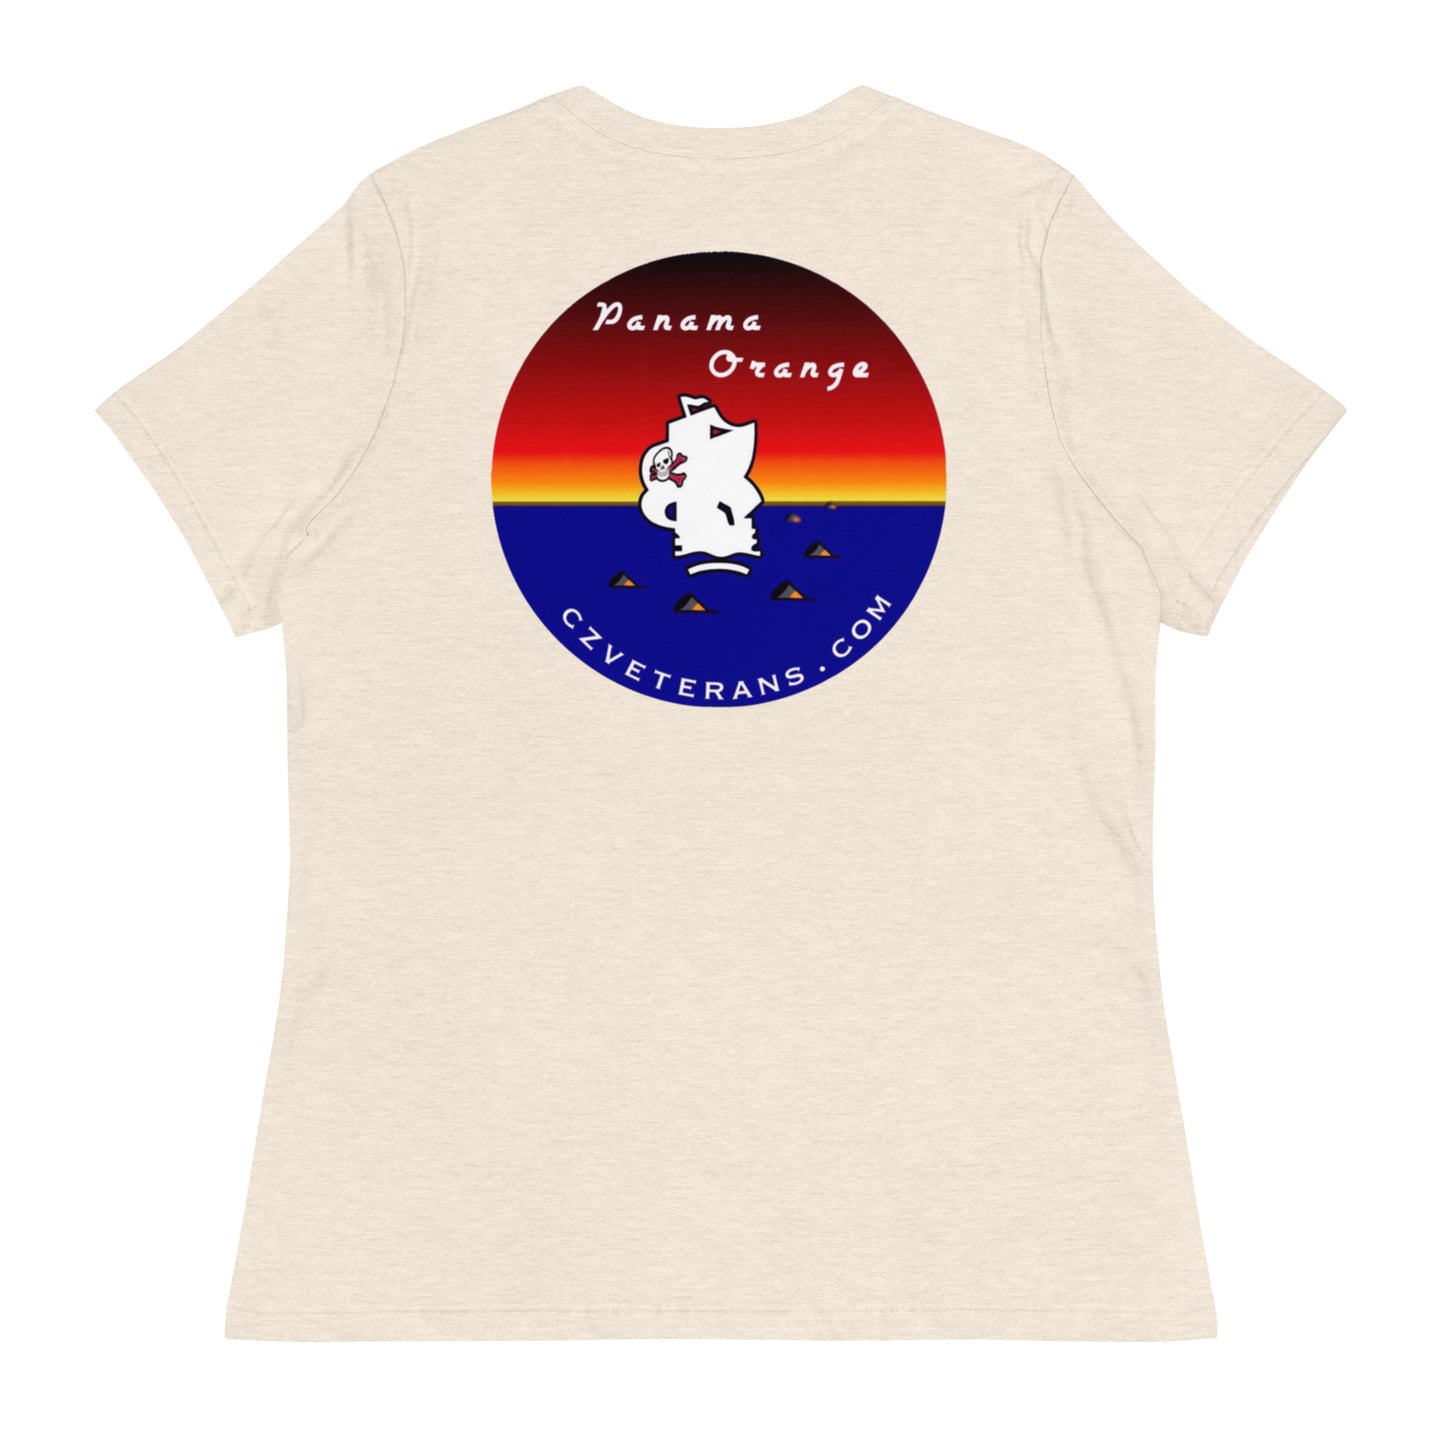 Panama Canal Zone Veteran’s Women's Relaxed T-Shirt